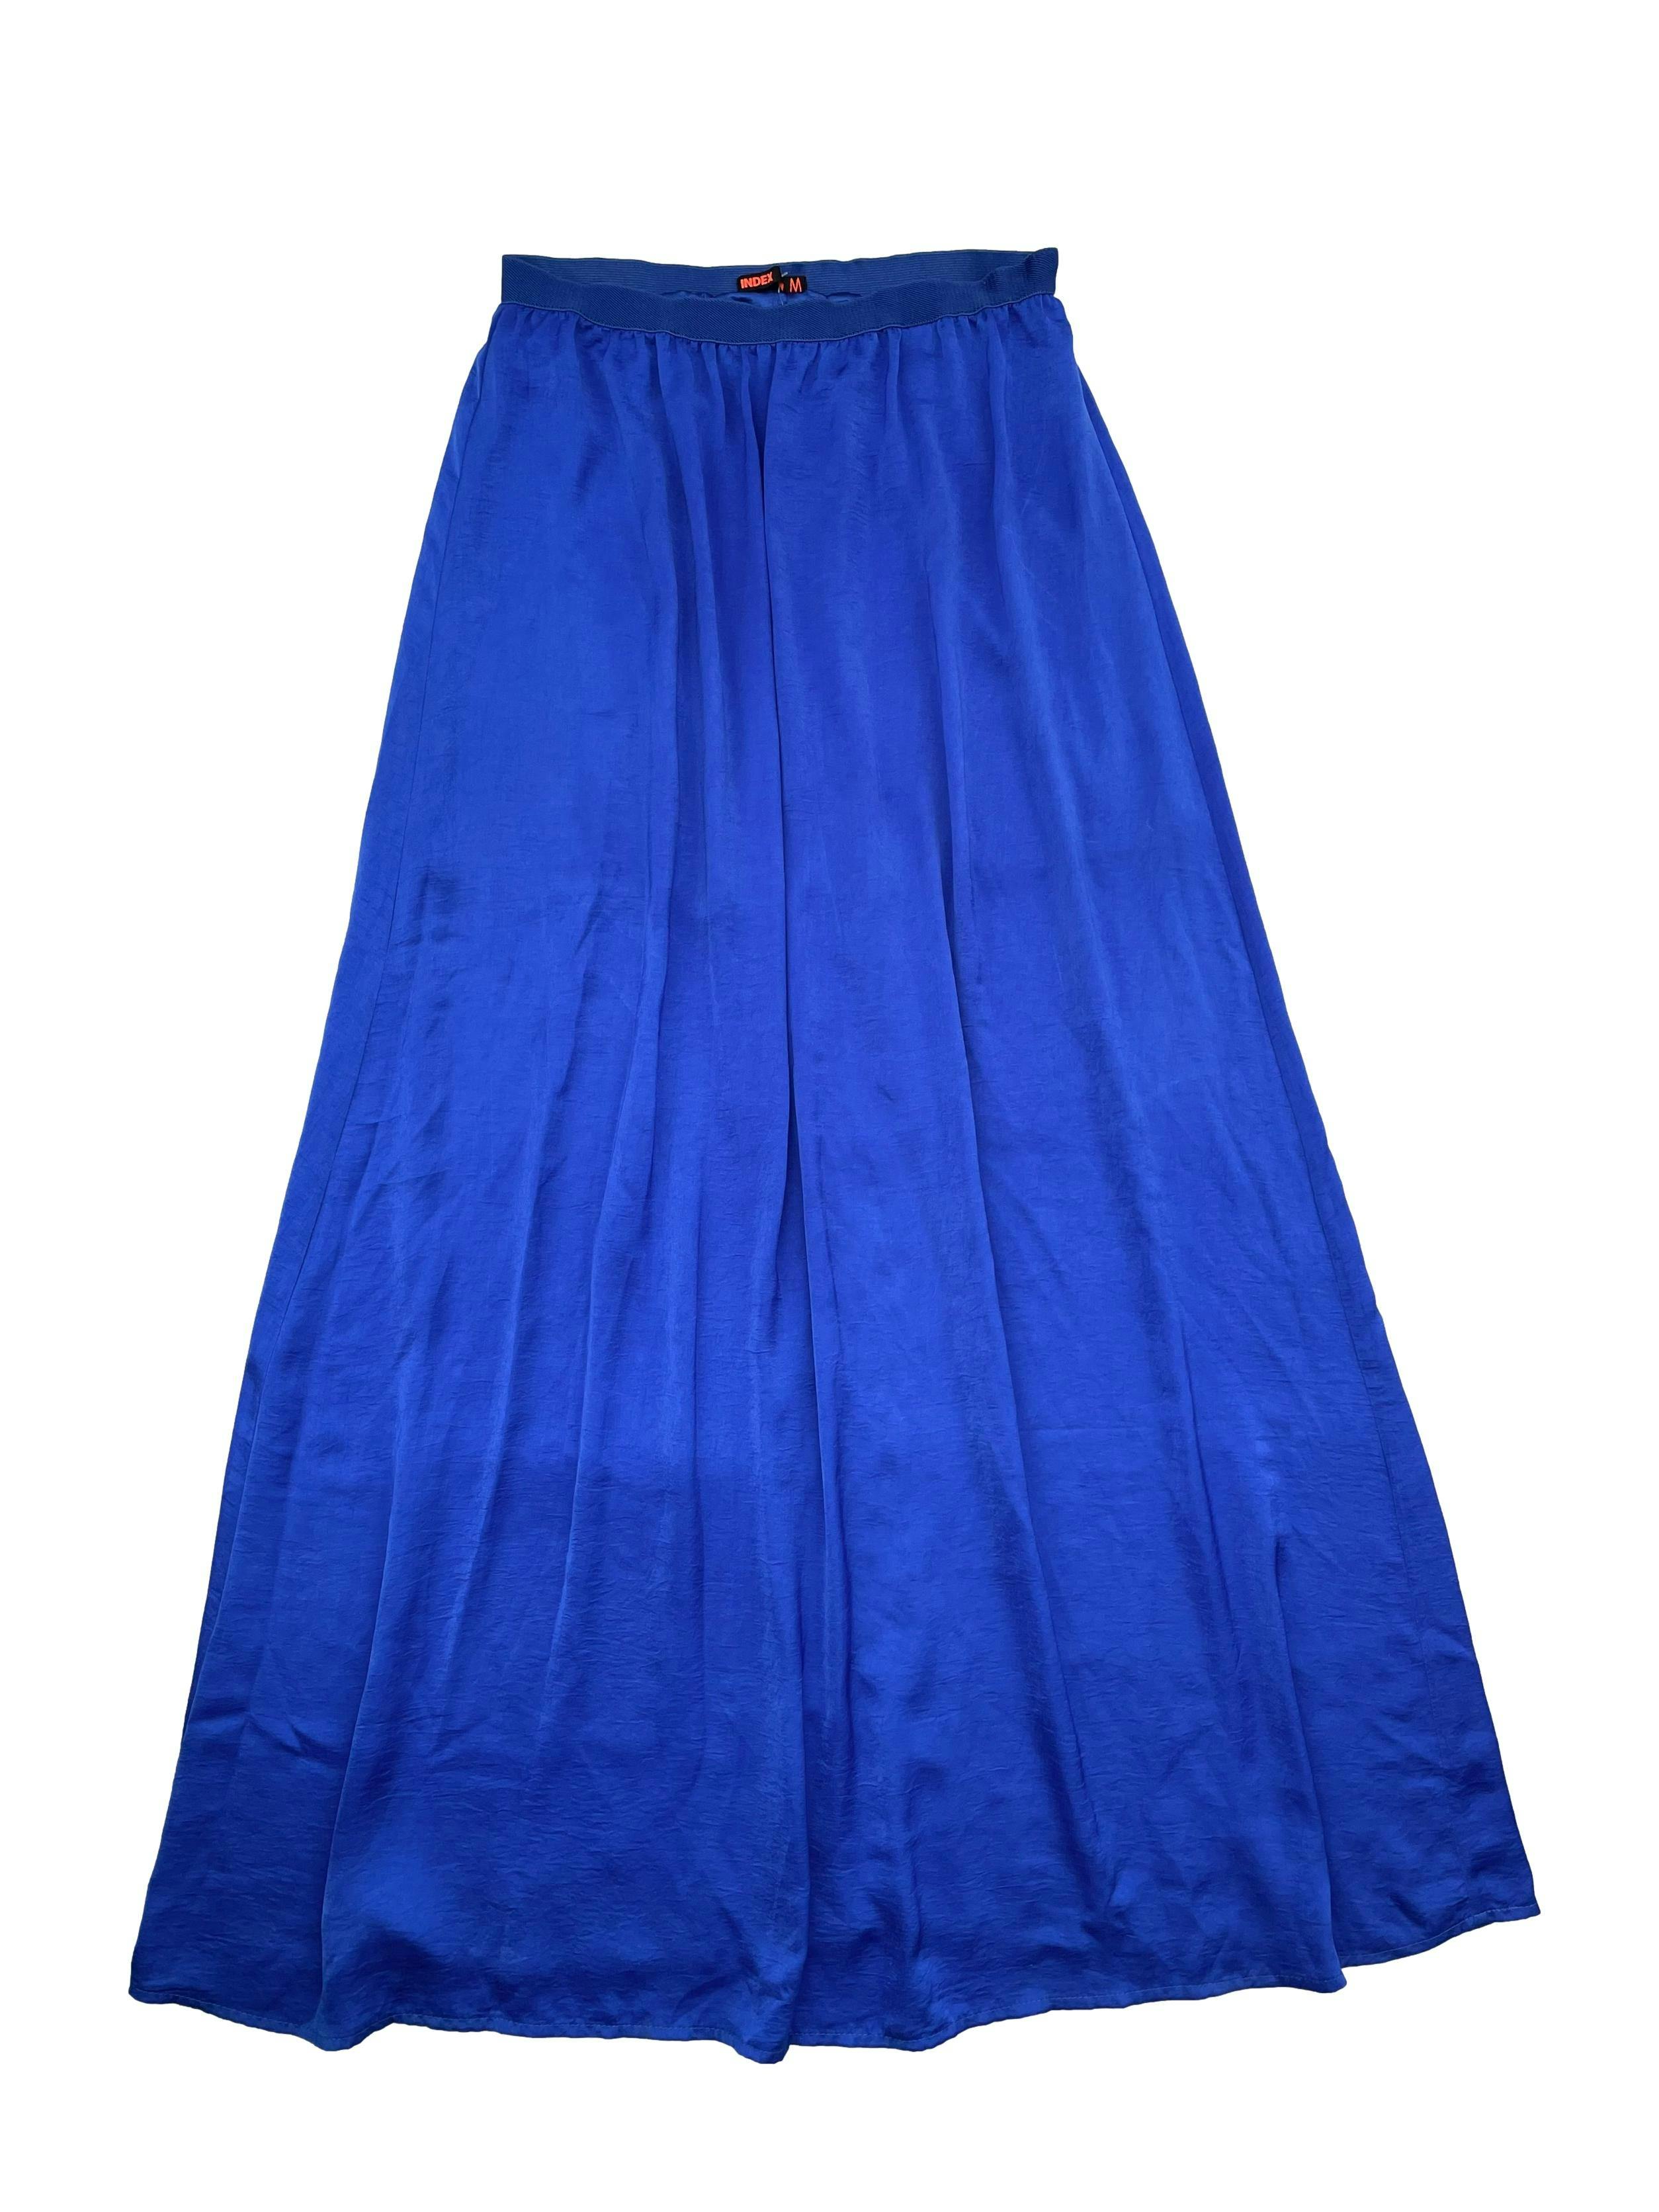 Falda larga Index azul satinado, tela suave sedosa, forro interno, elástico en la cintura. Cintura 70cm (sin estirar), Largo: 100cm